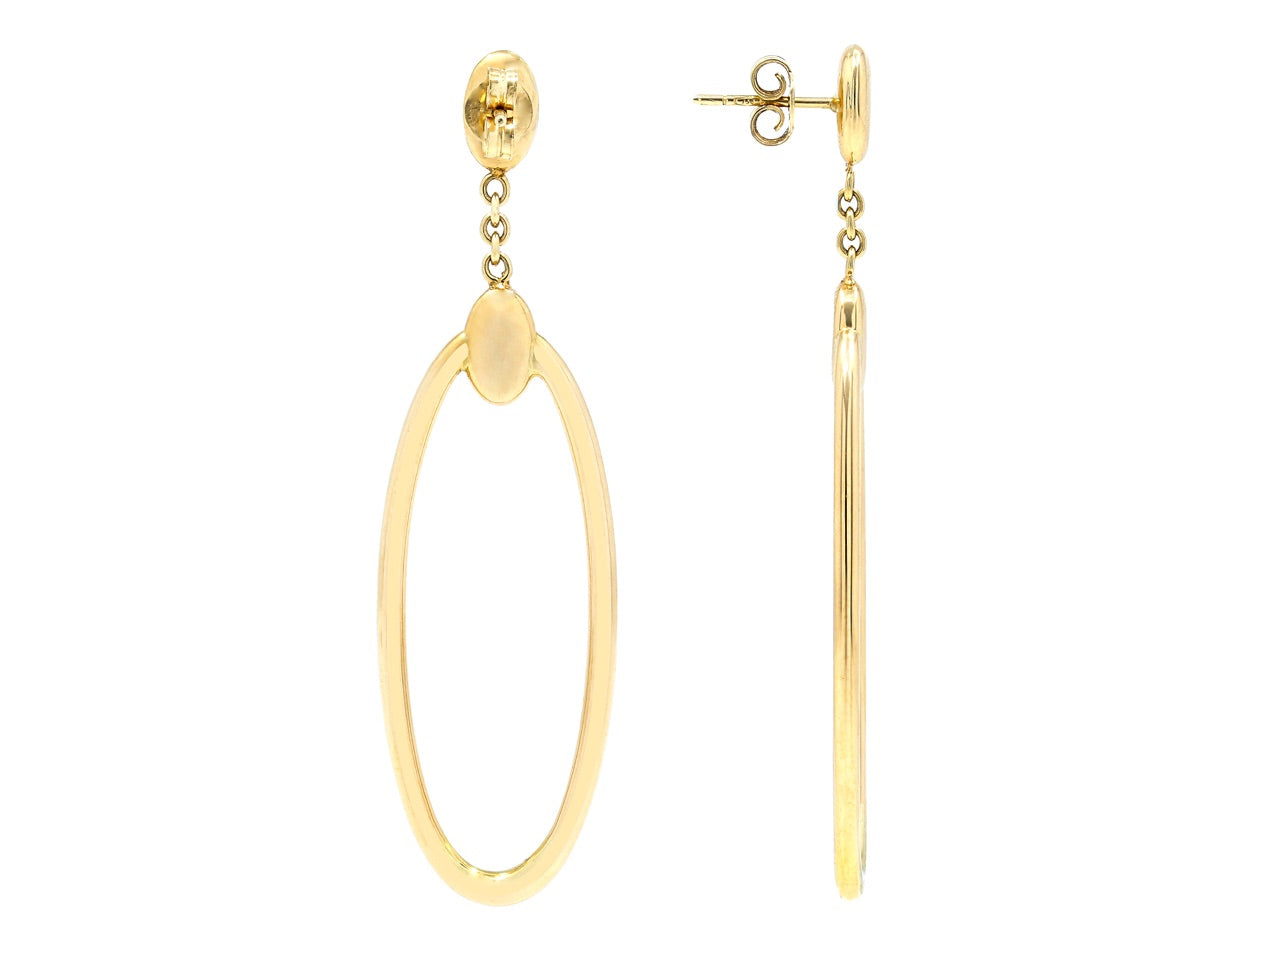 Gold Hoop Earrings, by Beladora